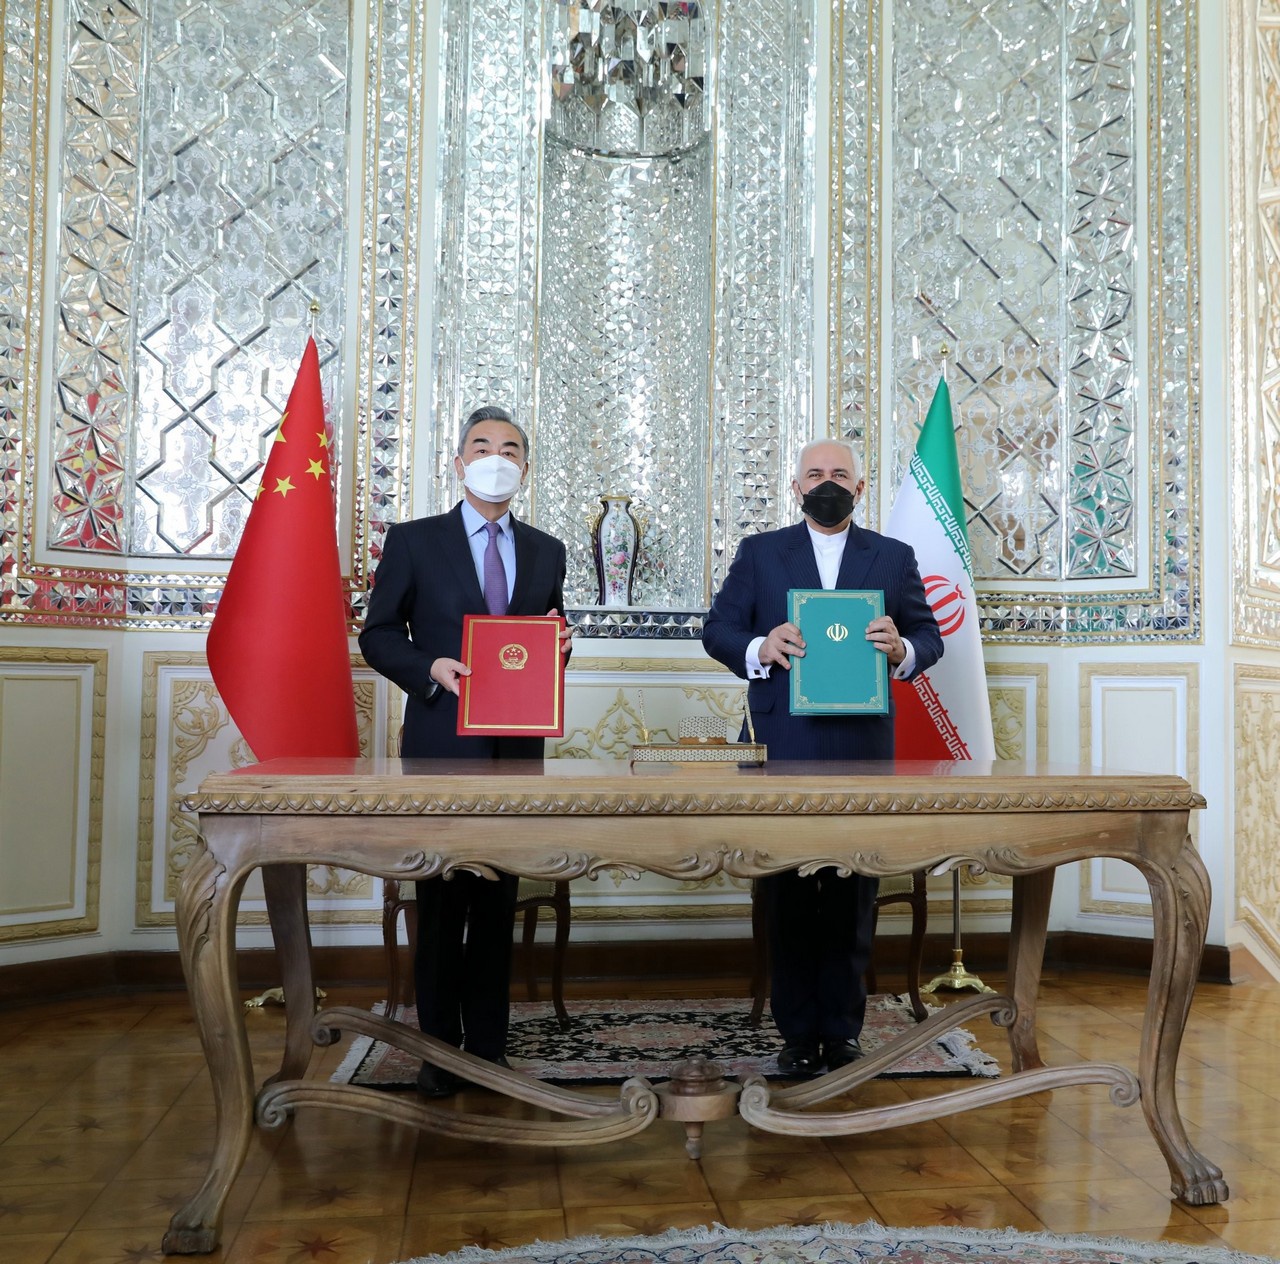 Иран и Китай 27 марта 2021 года заключили соглашение о политическом, стратегическом и экономическом сотрудничестве сроком на 25 лет.